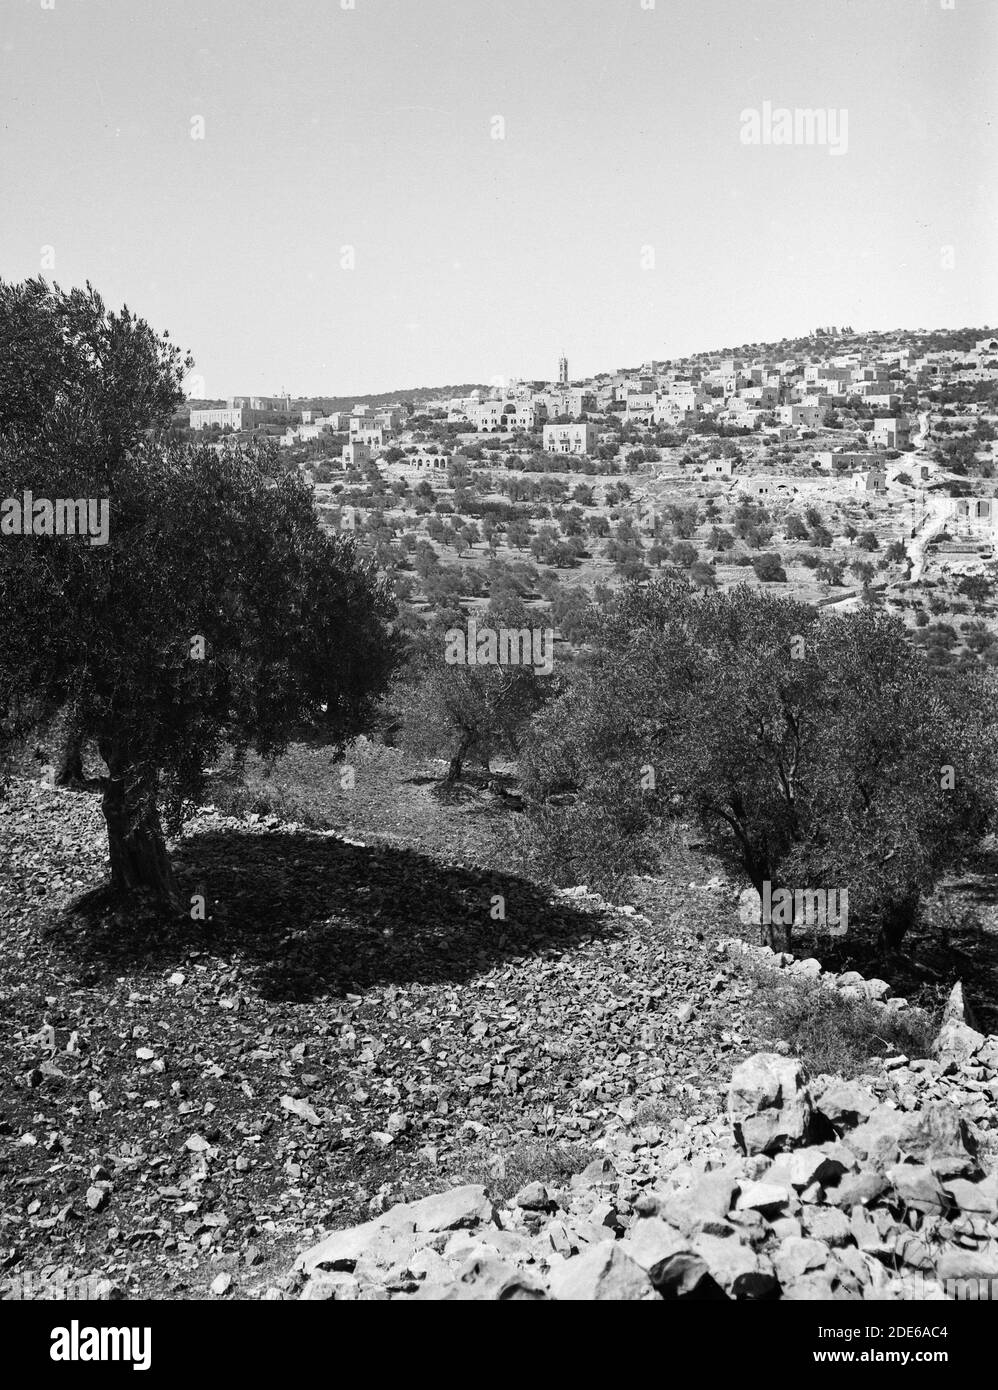 Didascalia originale: Betlemme e dintorni. Beit Jala (Zelzah) casa di Saul - Ubicazione: Cisgiordania--Beit Jala ca. 1900 Foto Stock